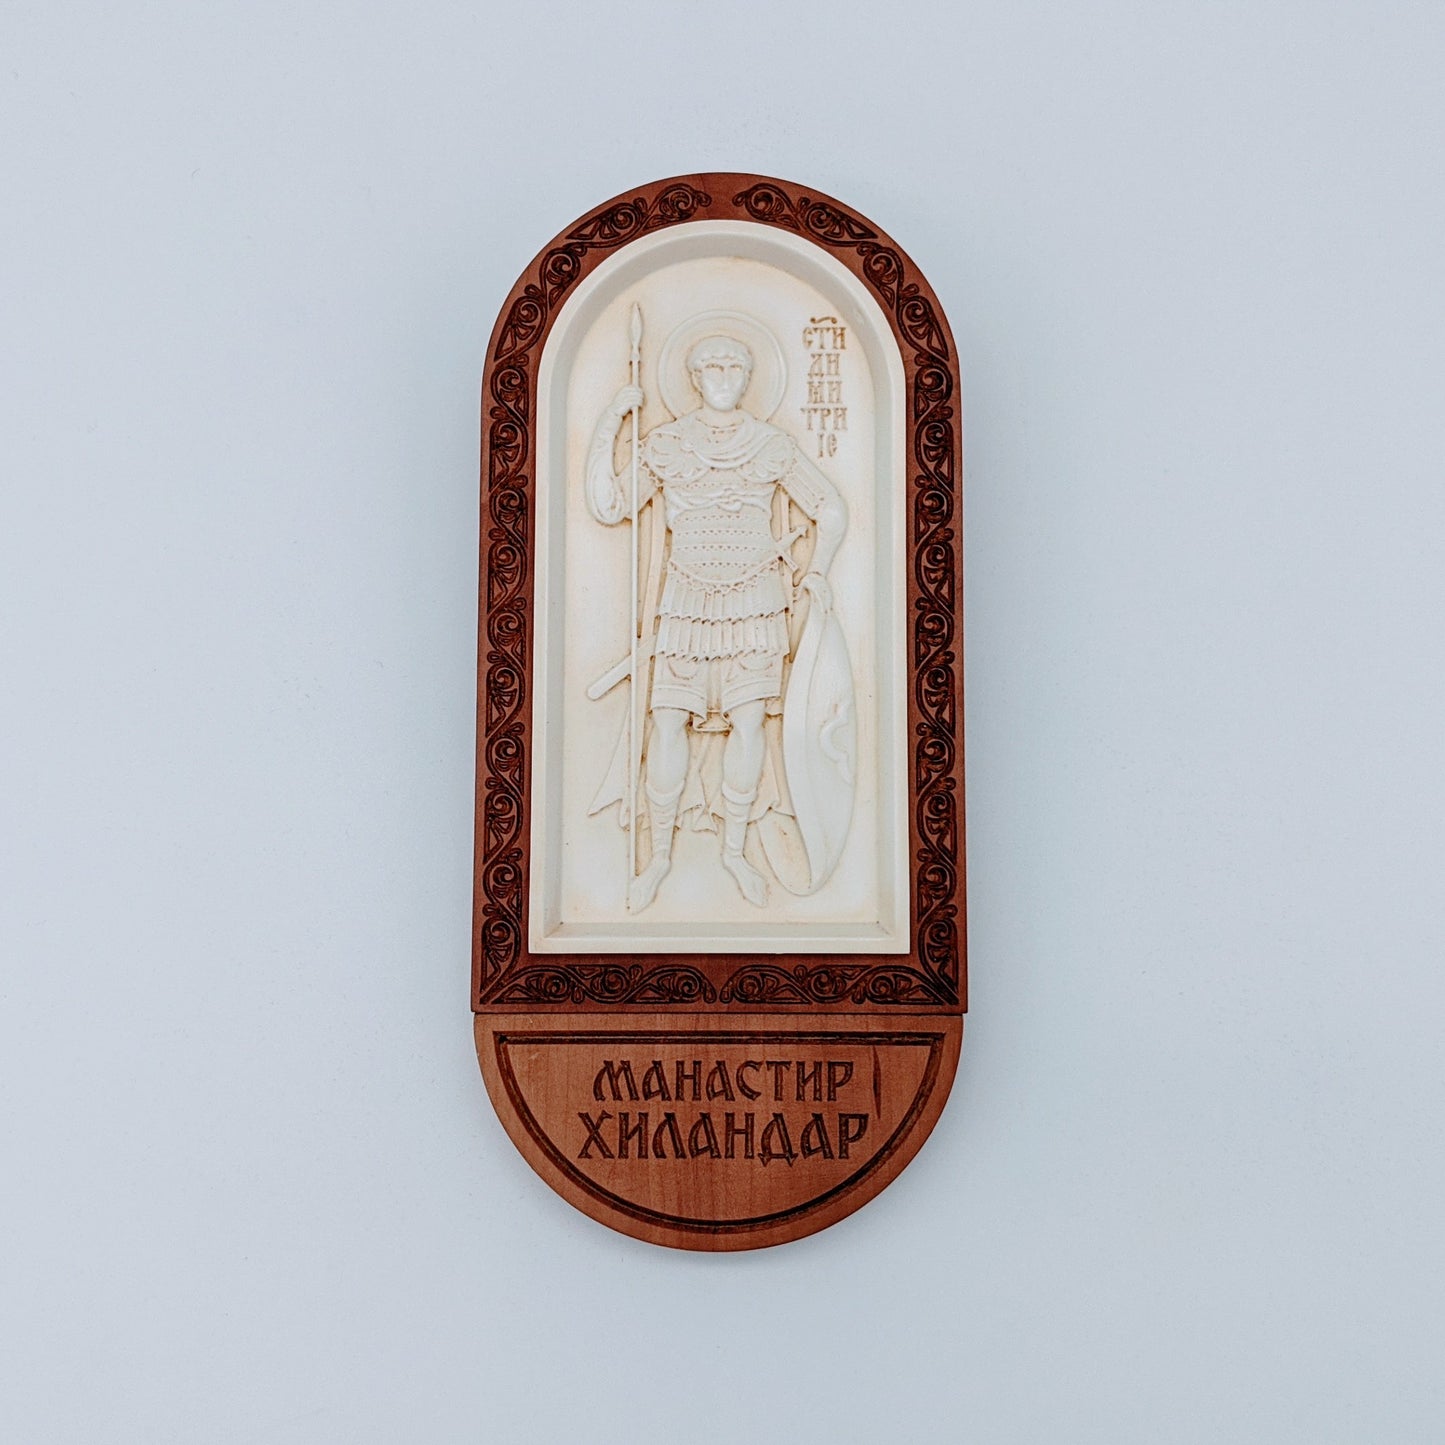 Χειροποιήτη εικόνα του Αγίου Δημητρίου από ελεφαντόδοντο και ξύλο